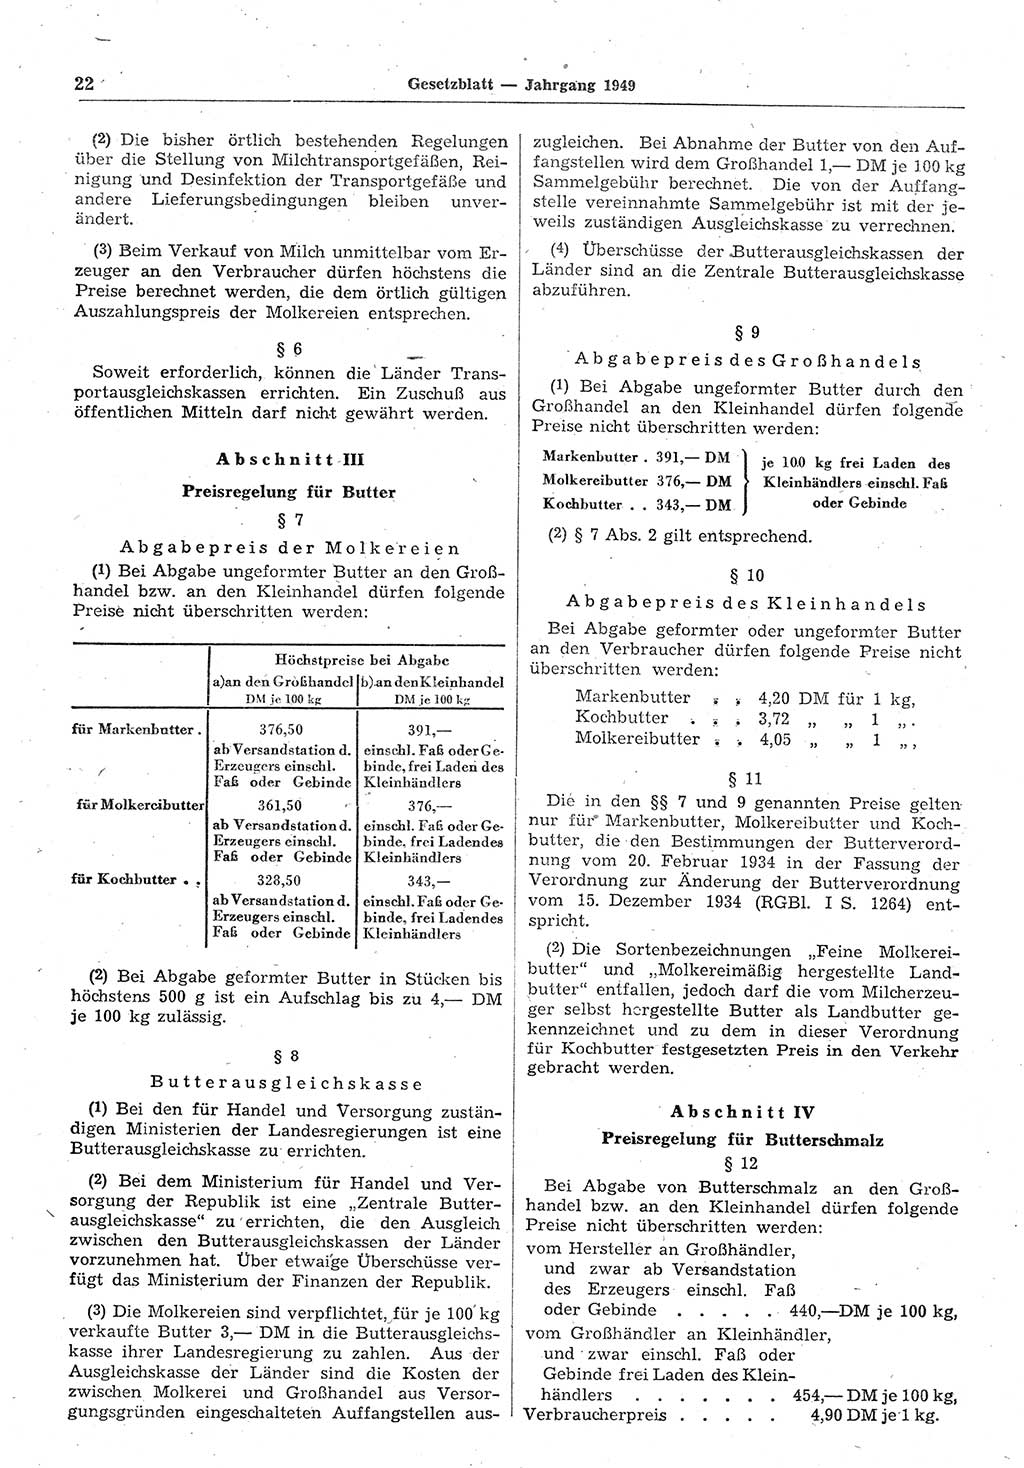 Gesetzblatt (GBl.) der Deutschen Demokratischen Republik (DDR) 1949, Seite 22 (GBl. DDR 1949, S. 22)